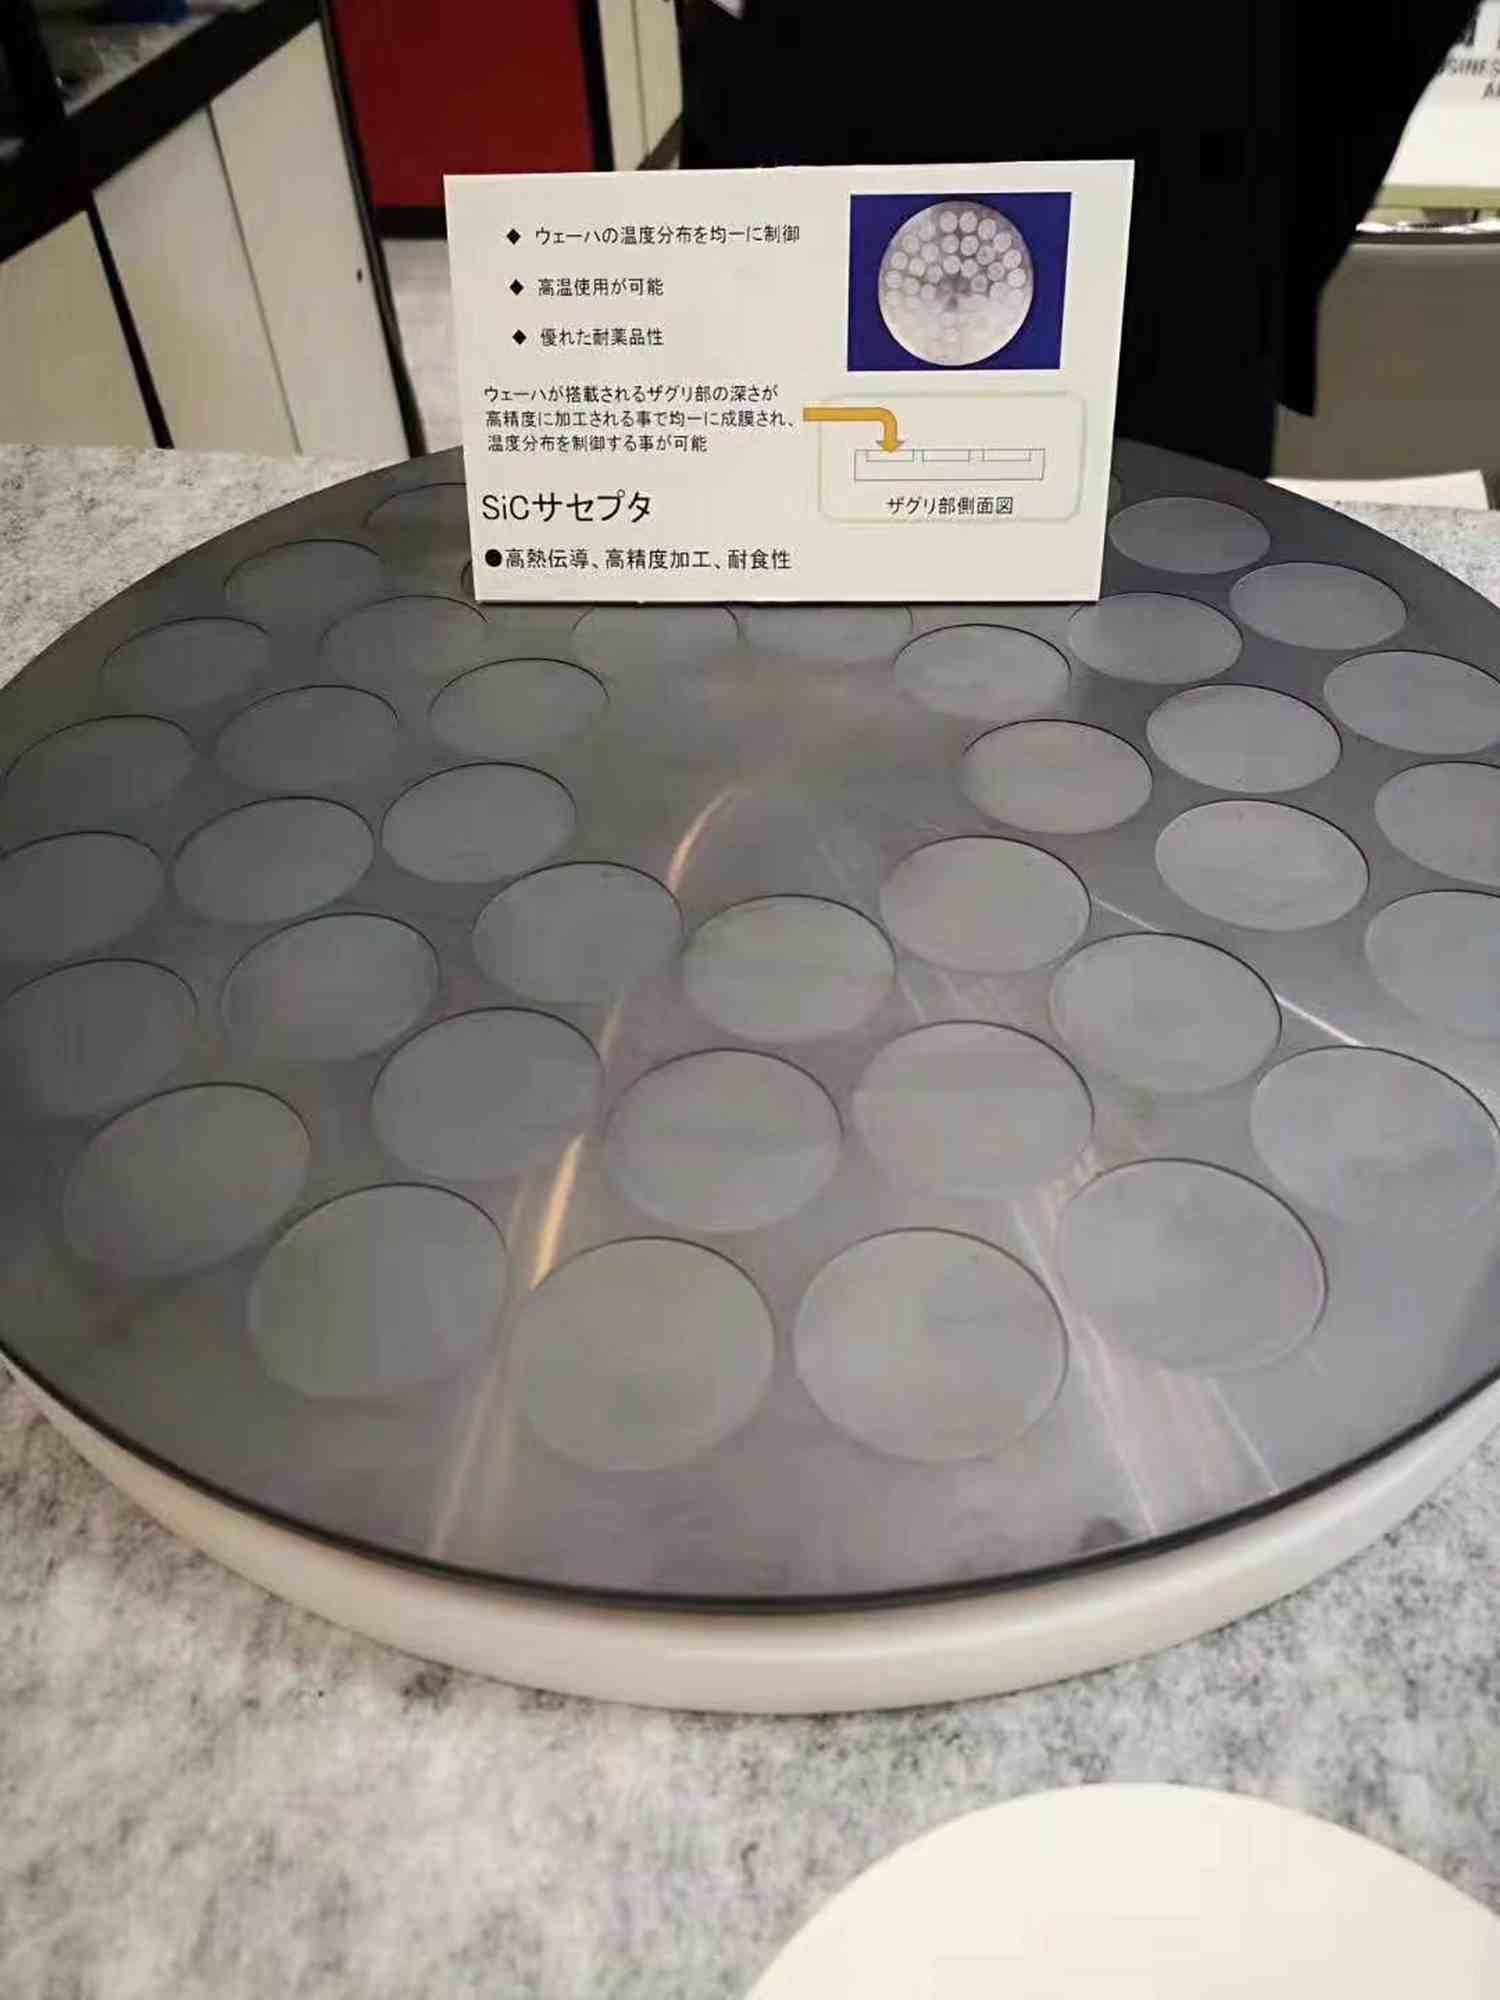 广州正规微孔陶瓷真空吸盘批发零售价,微孔陶瓷真空吸盘